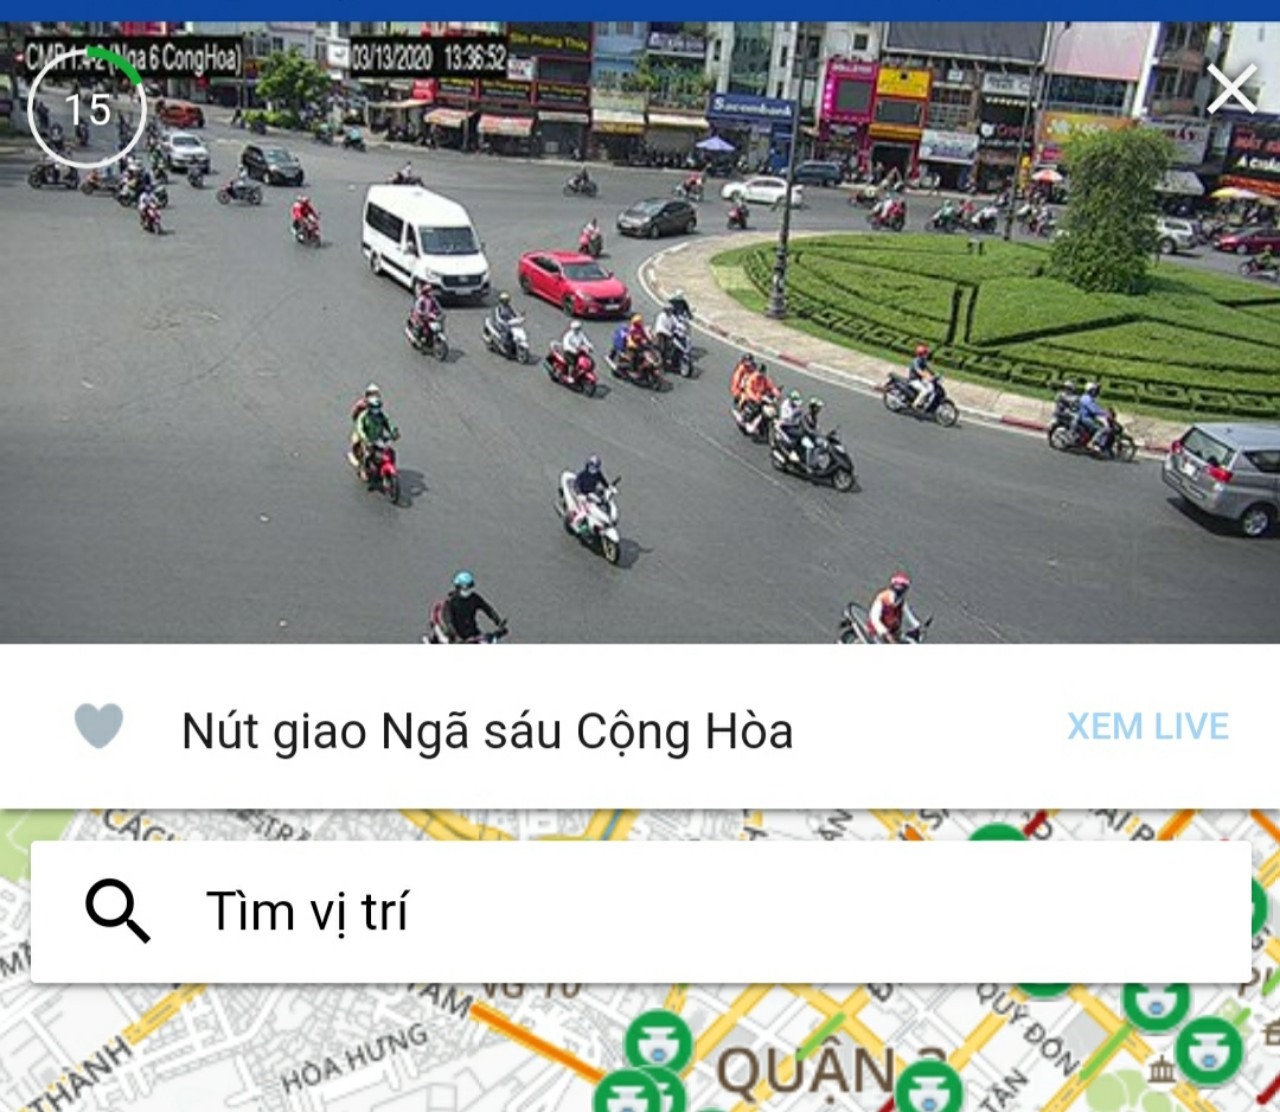 Tình hình giao thông tại một địa điểm khi quan sát qua ứng dụng.